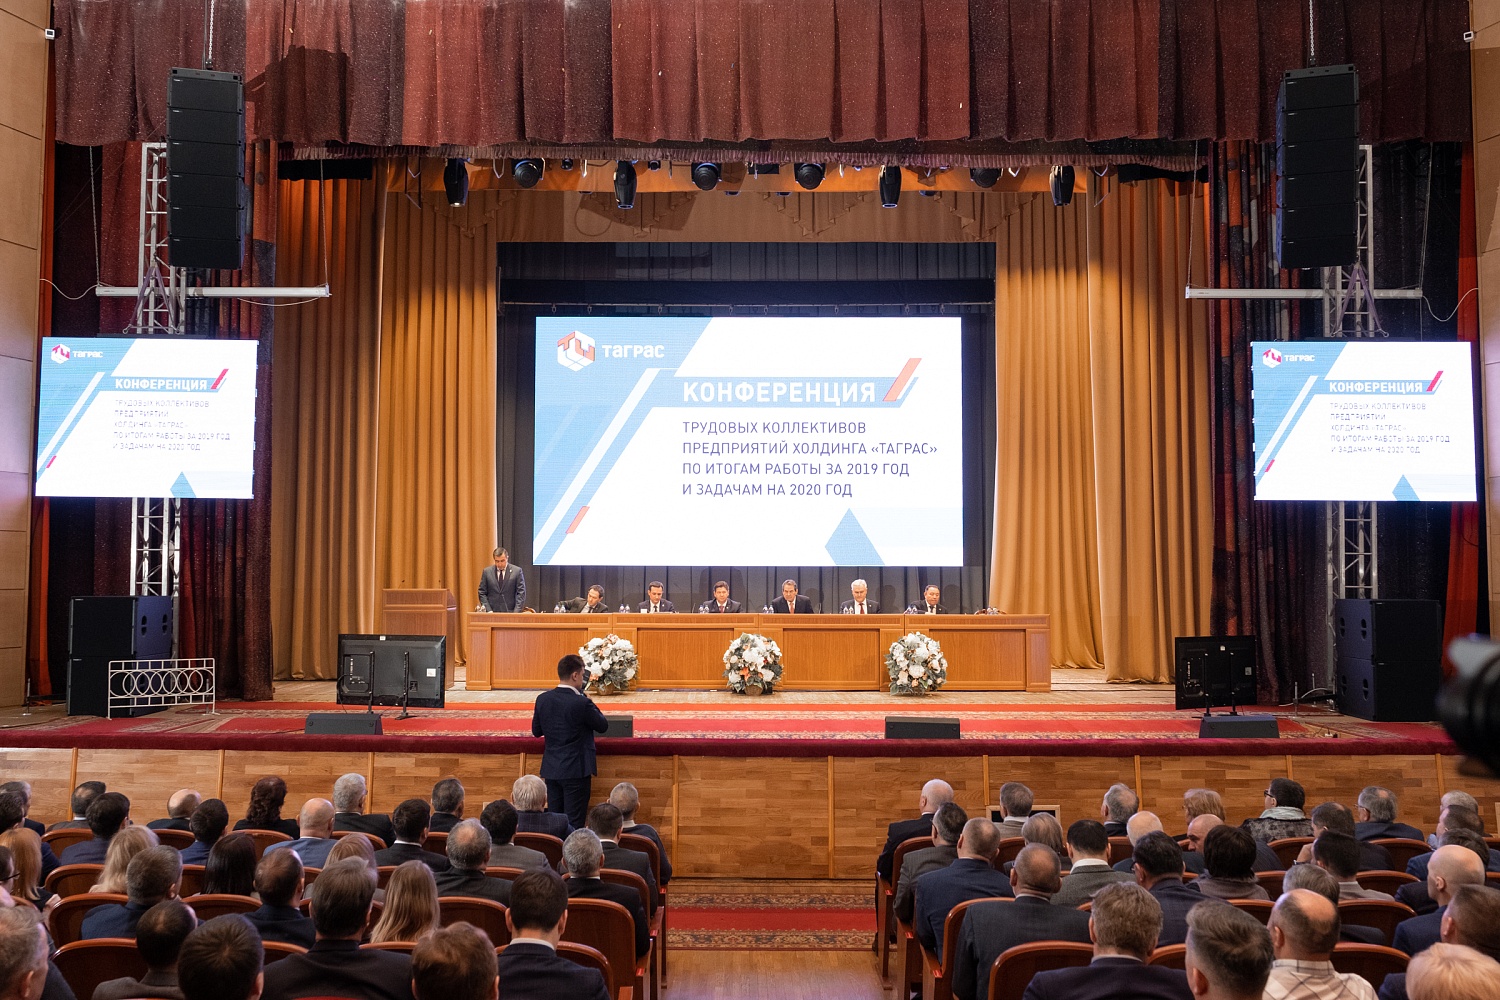 Конференция трудовых коллективов Холдинга "ТАГРАС" по итогам работы за 2019 год